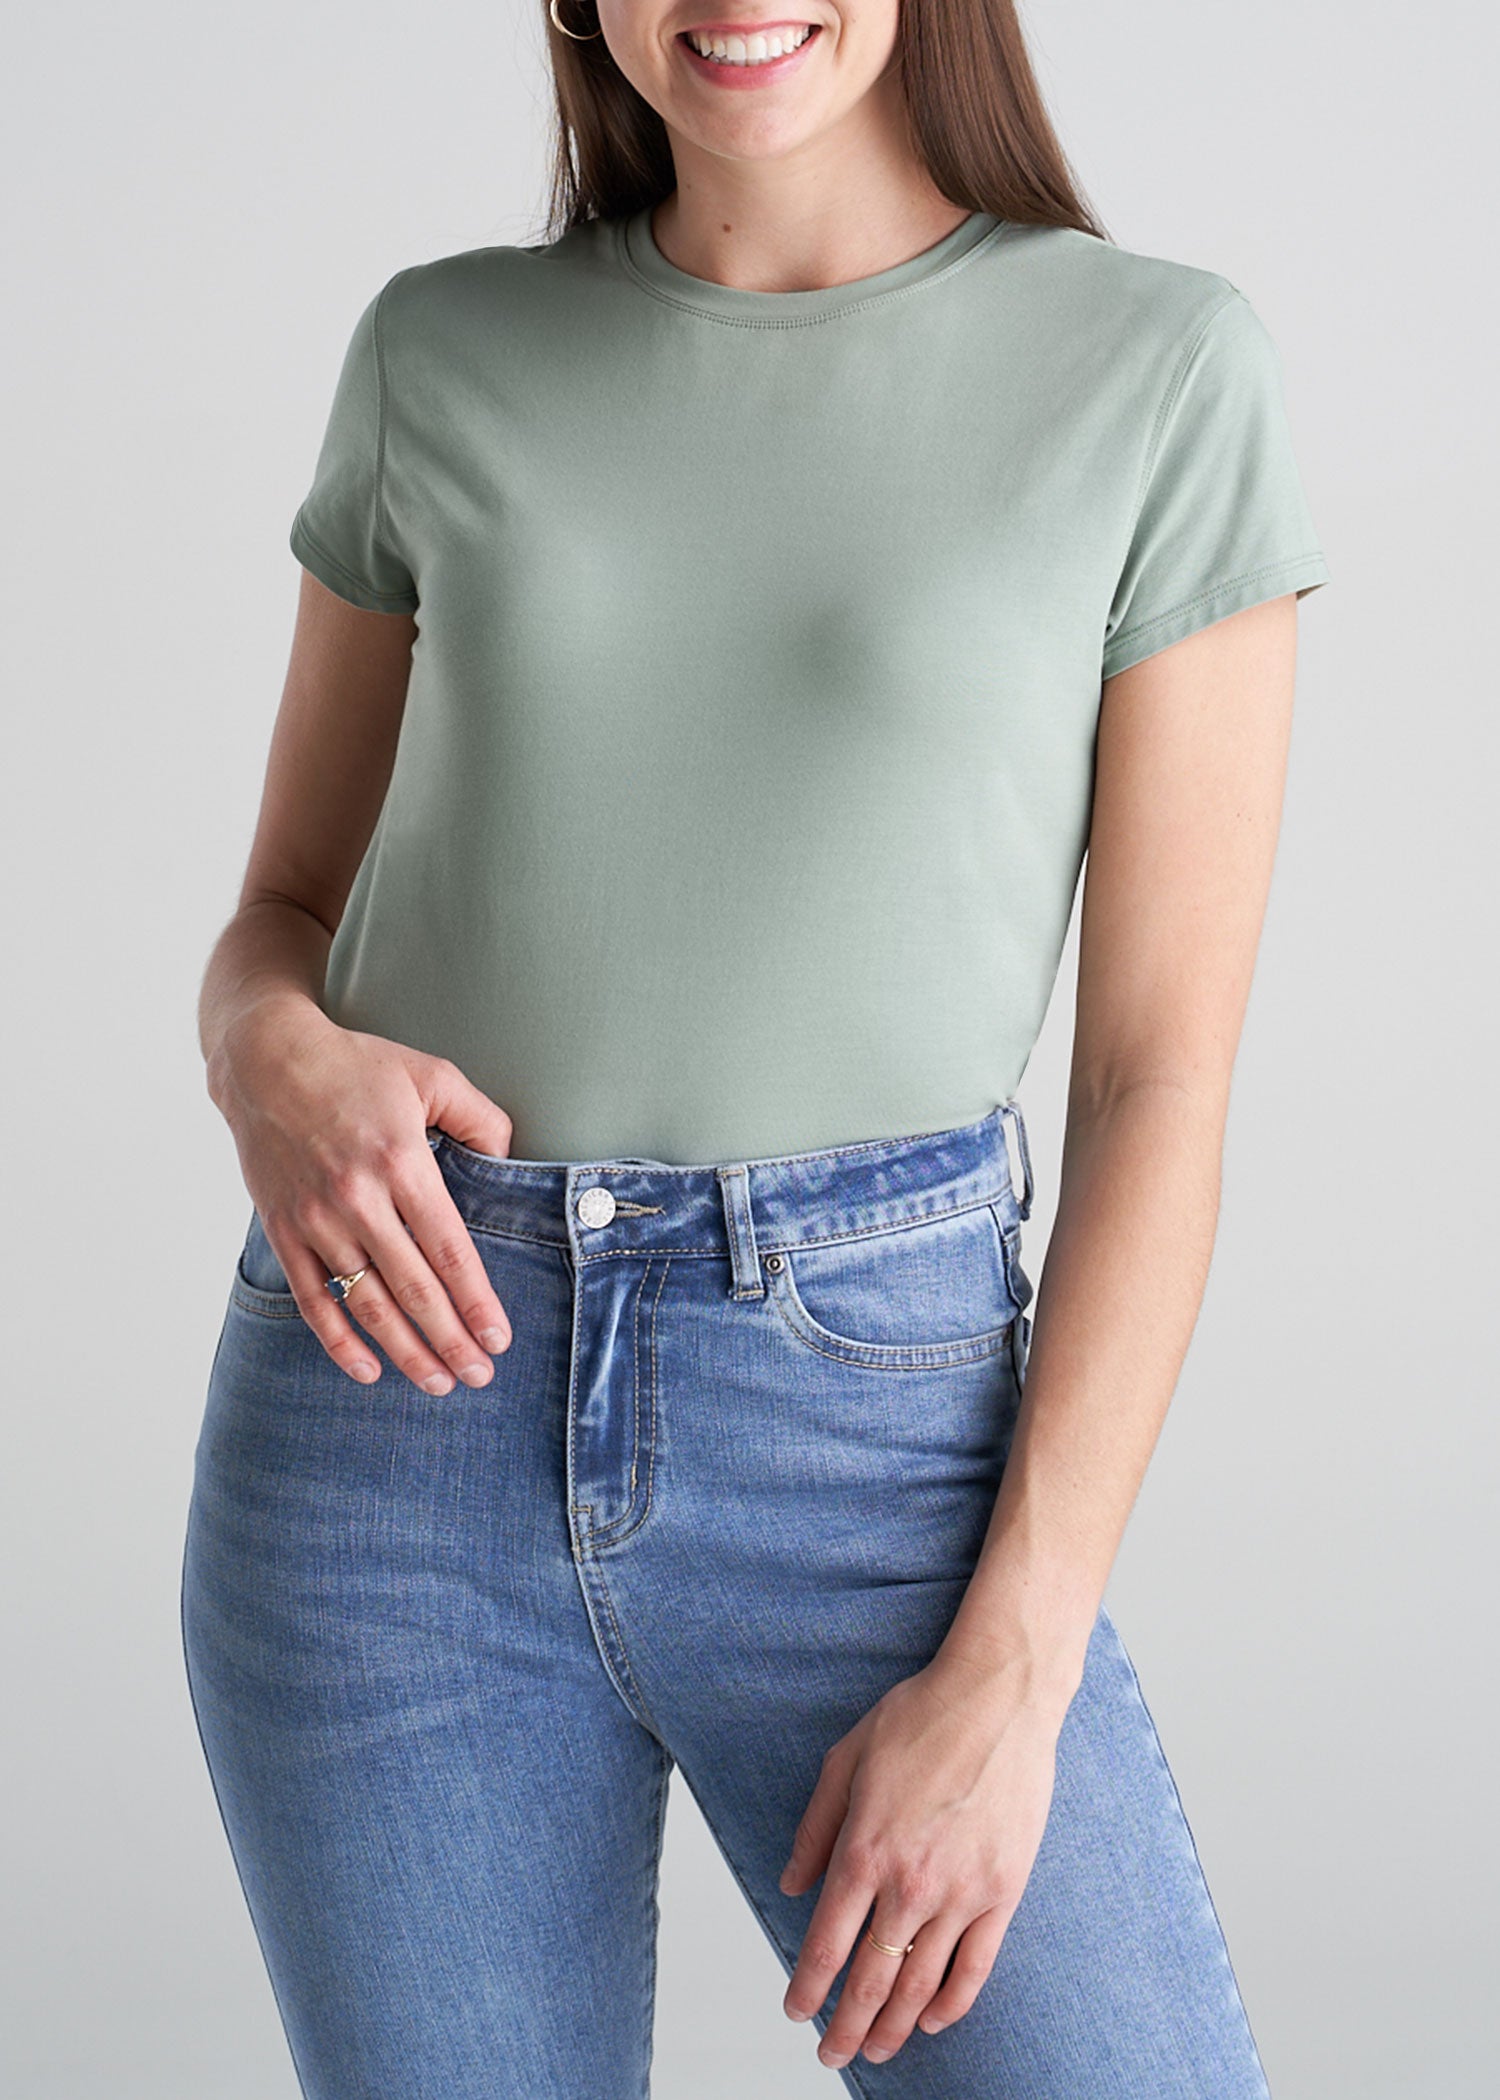 Slim Fit Cap Sleeve Women's Tall T-Shirts |